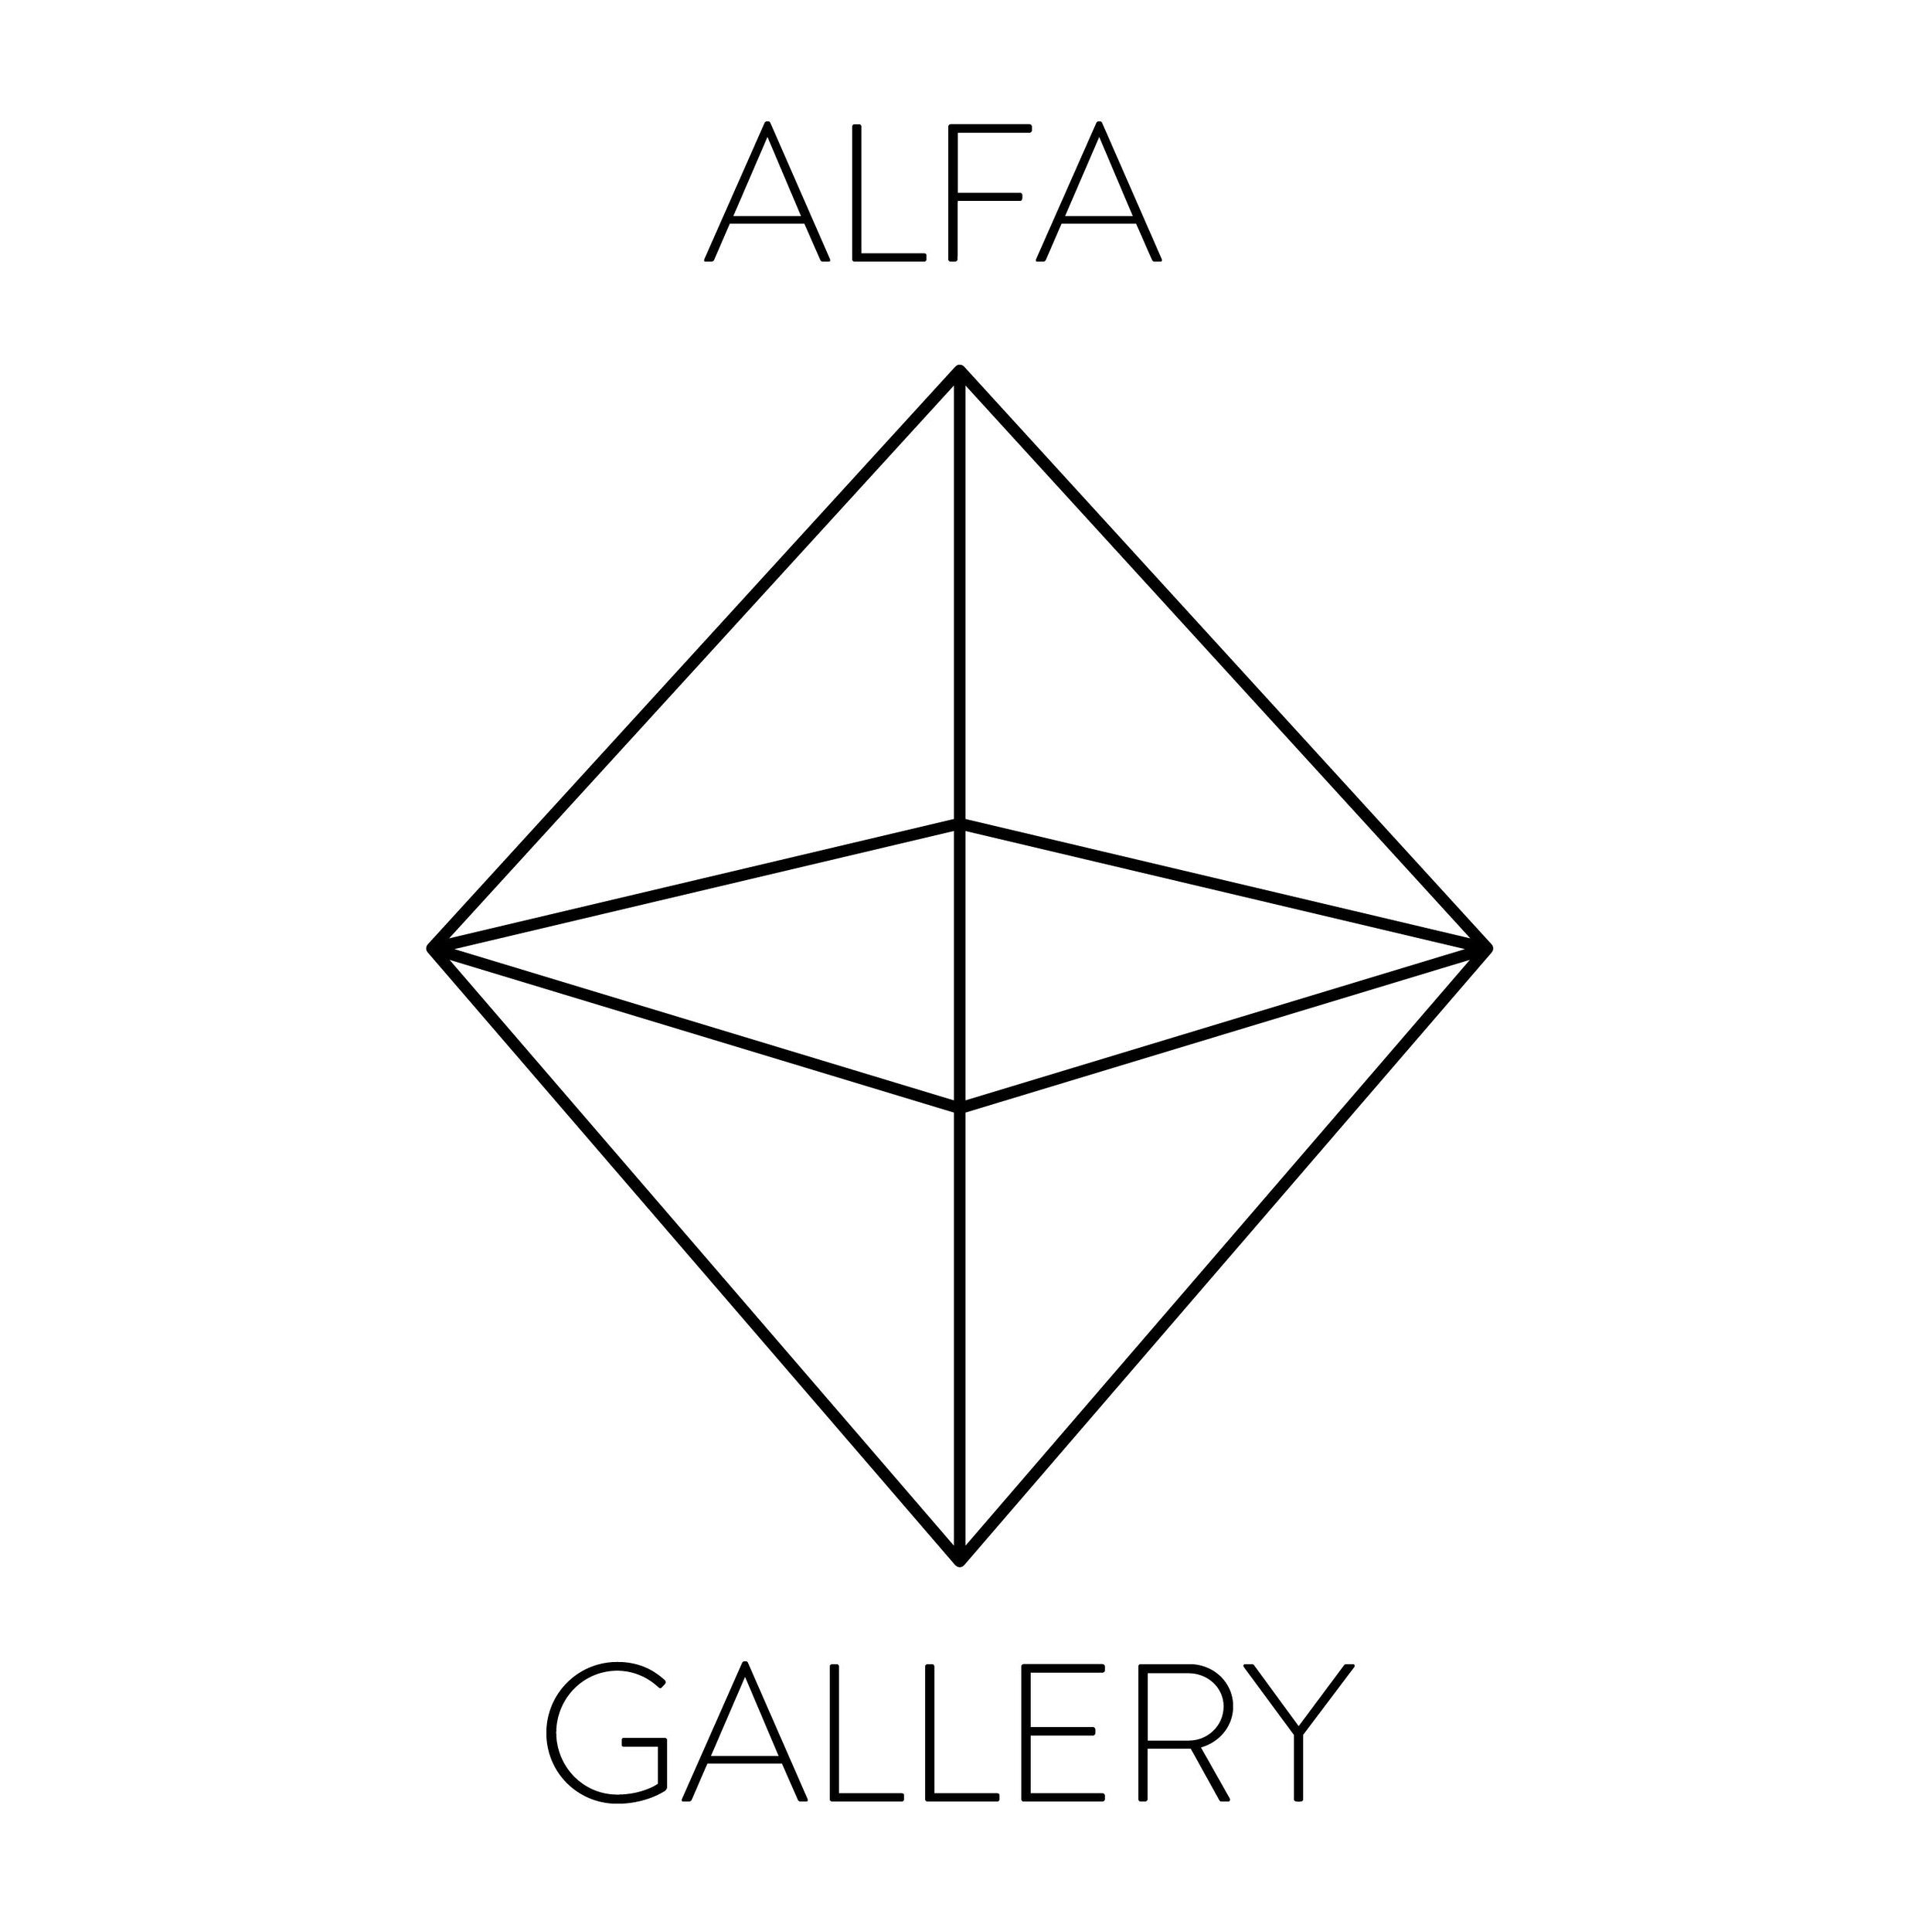 Alpha треугольник. Альфа logo. Альфа звезда логотип. Alpha artist. Alfa is